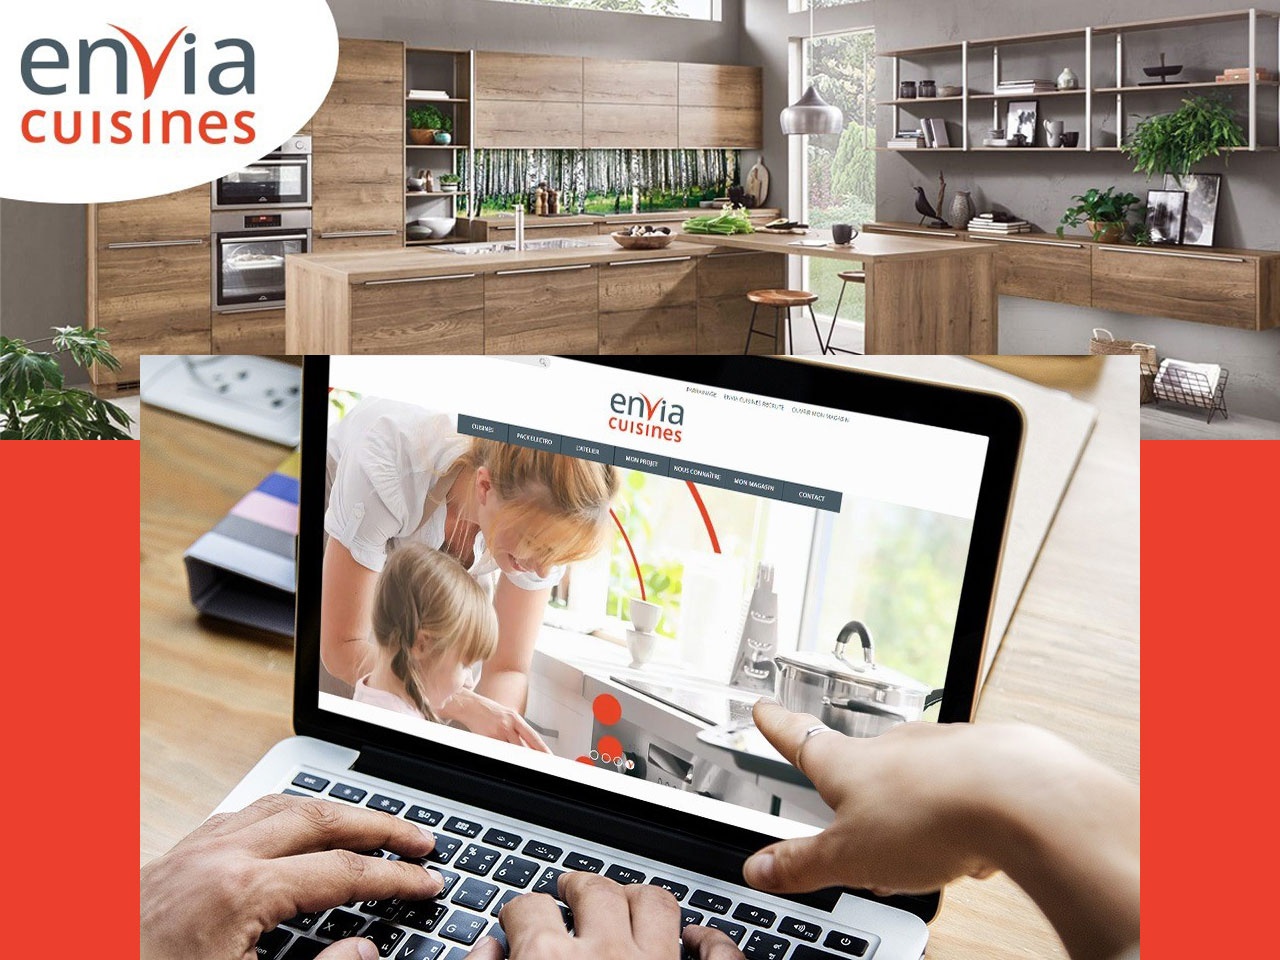 Envia Cuisines affiche un chiffre d’affaires en hausse de 31% au 3e trimestre